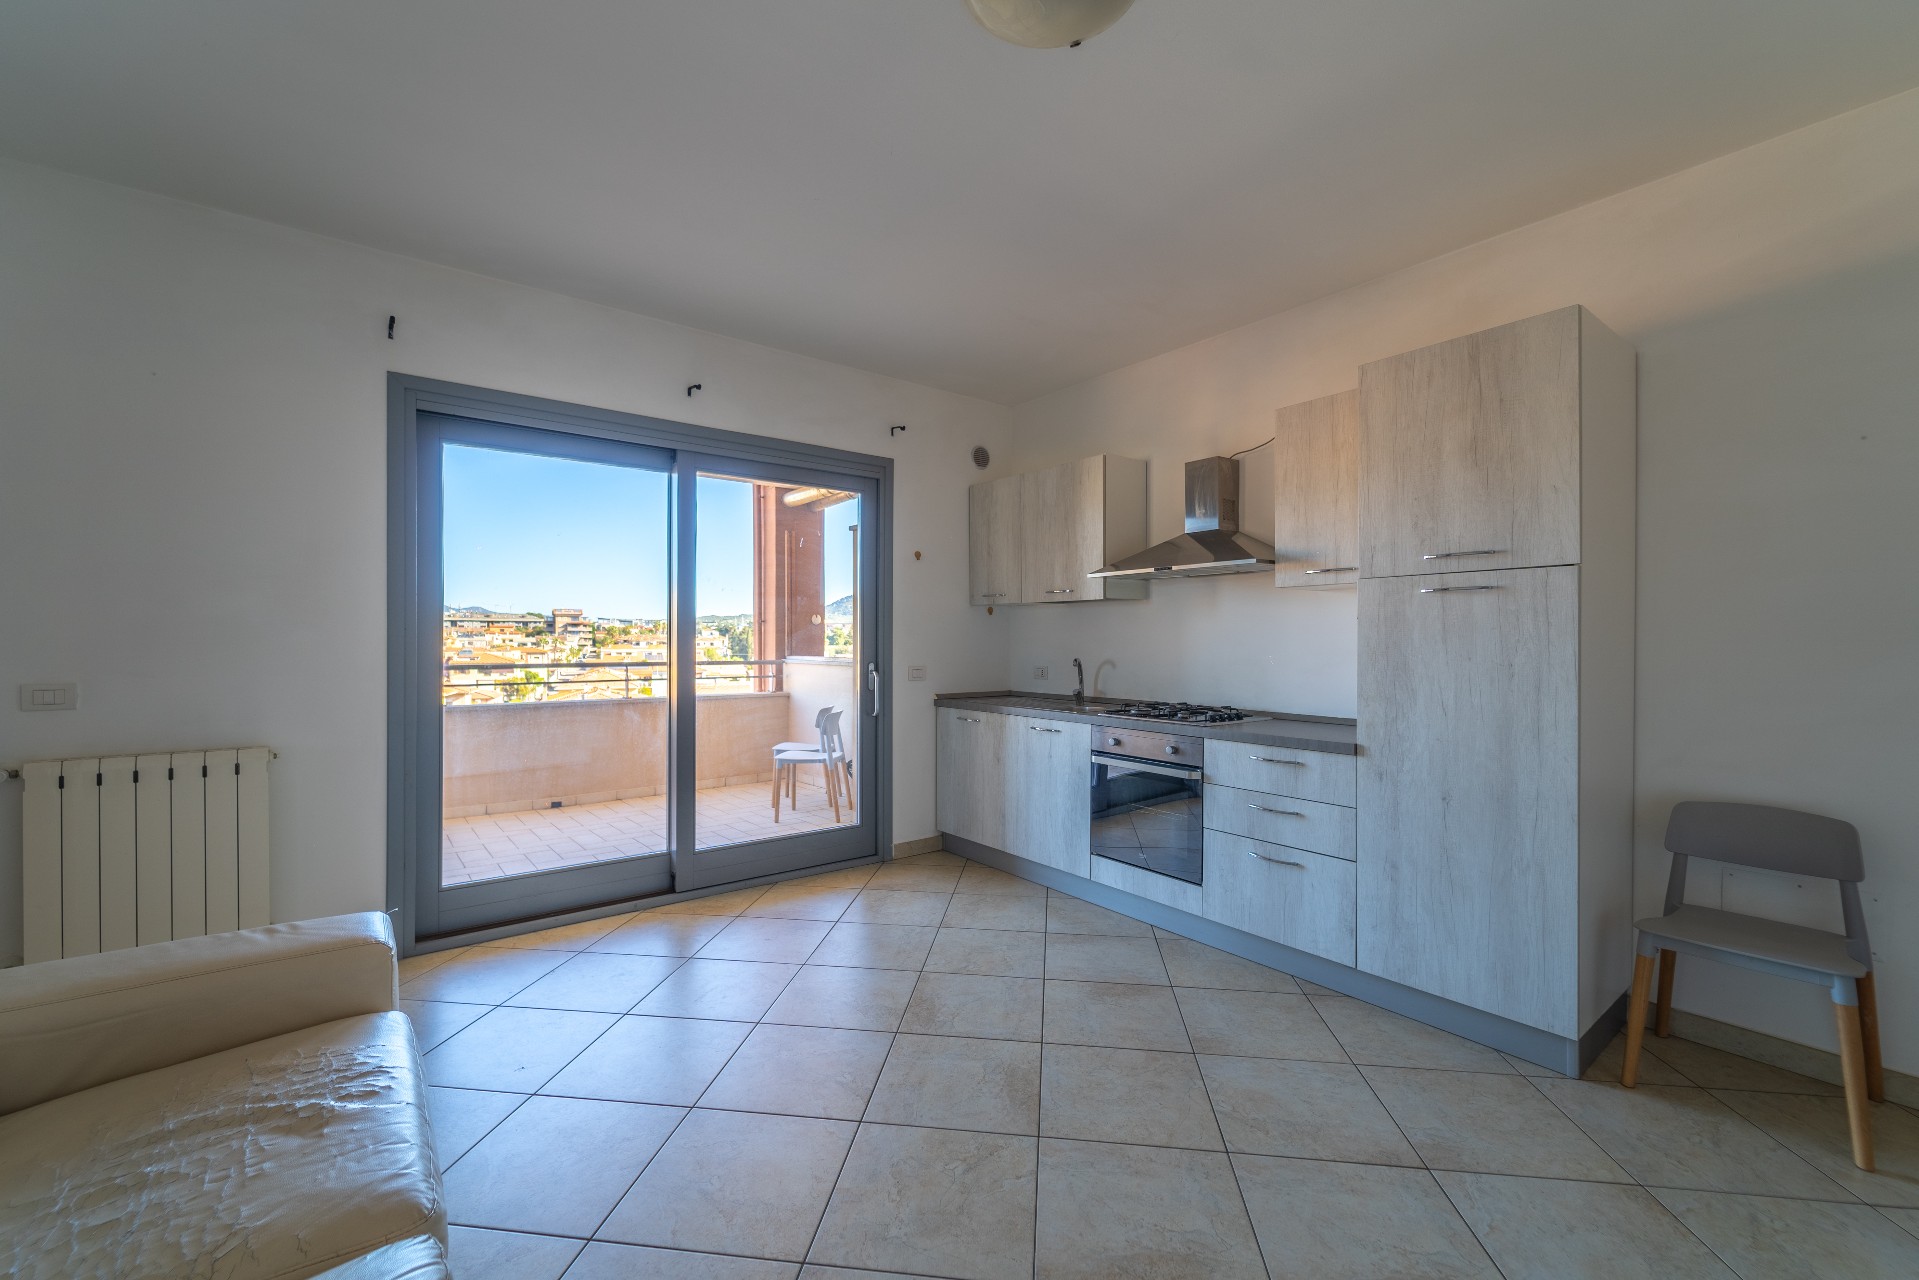 Three-room apartment with panoramic veranda in Olbia, Via Vignola